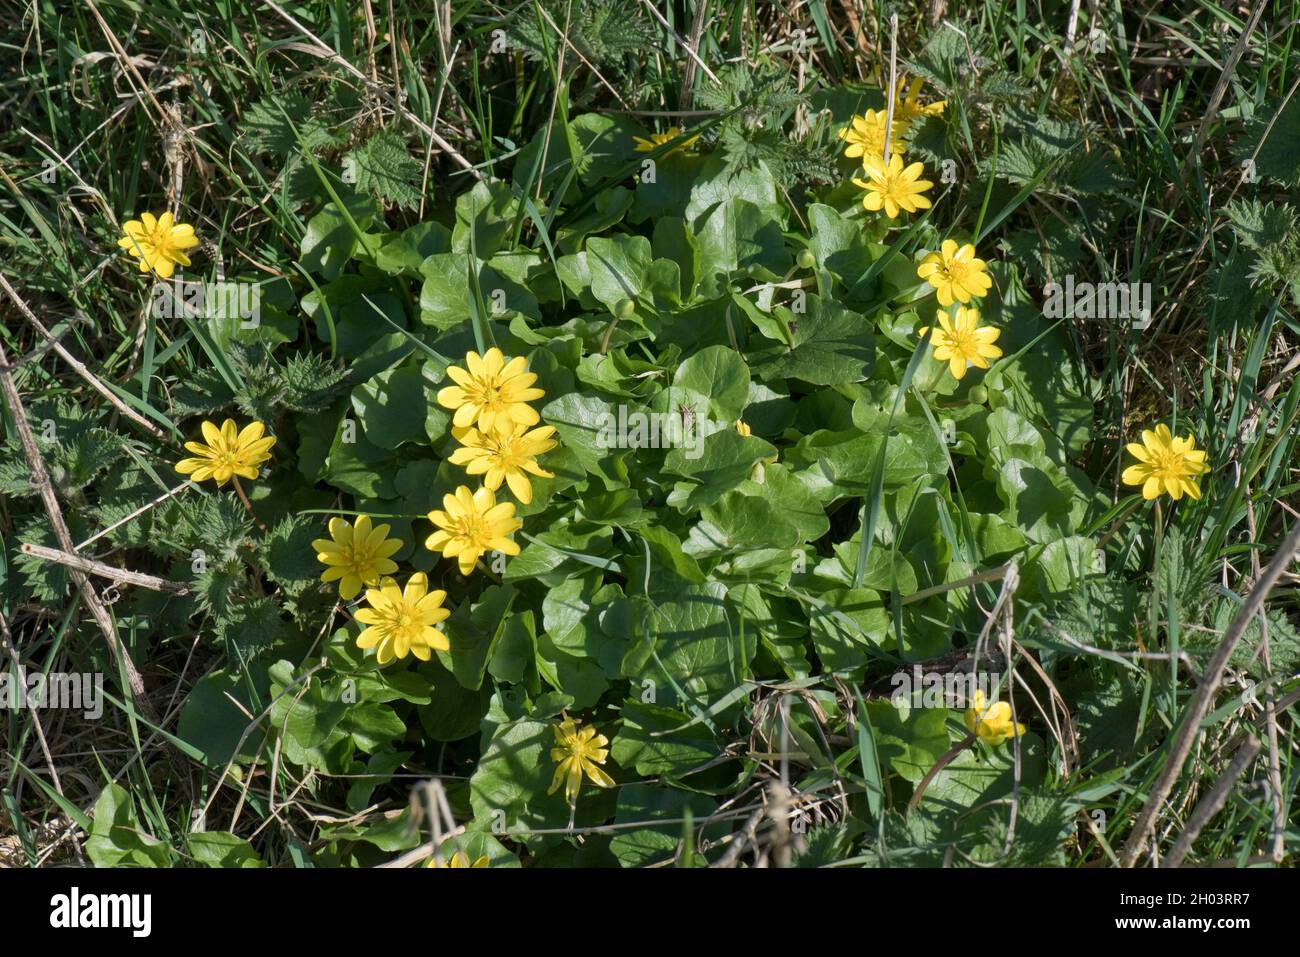 Plantas de tipo buttercup, amarillo, celandina menor (ficaria verna), florecen a principios de primavera, Berkshire, marzo Foto de stock